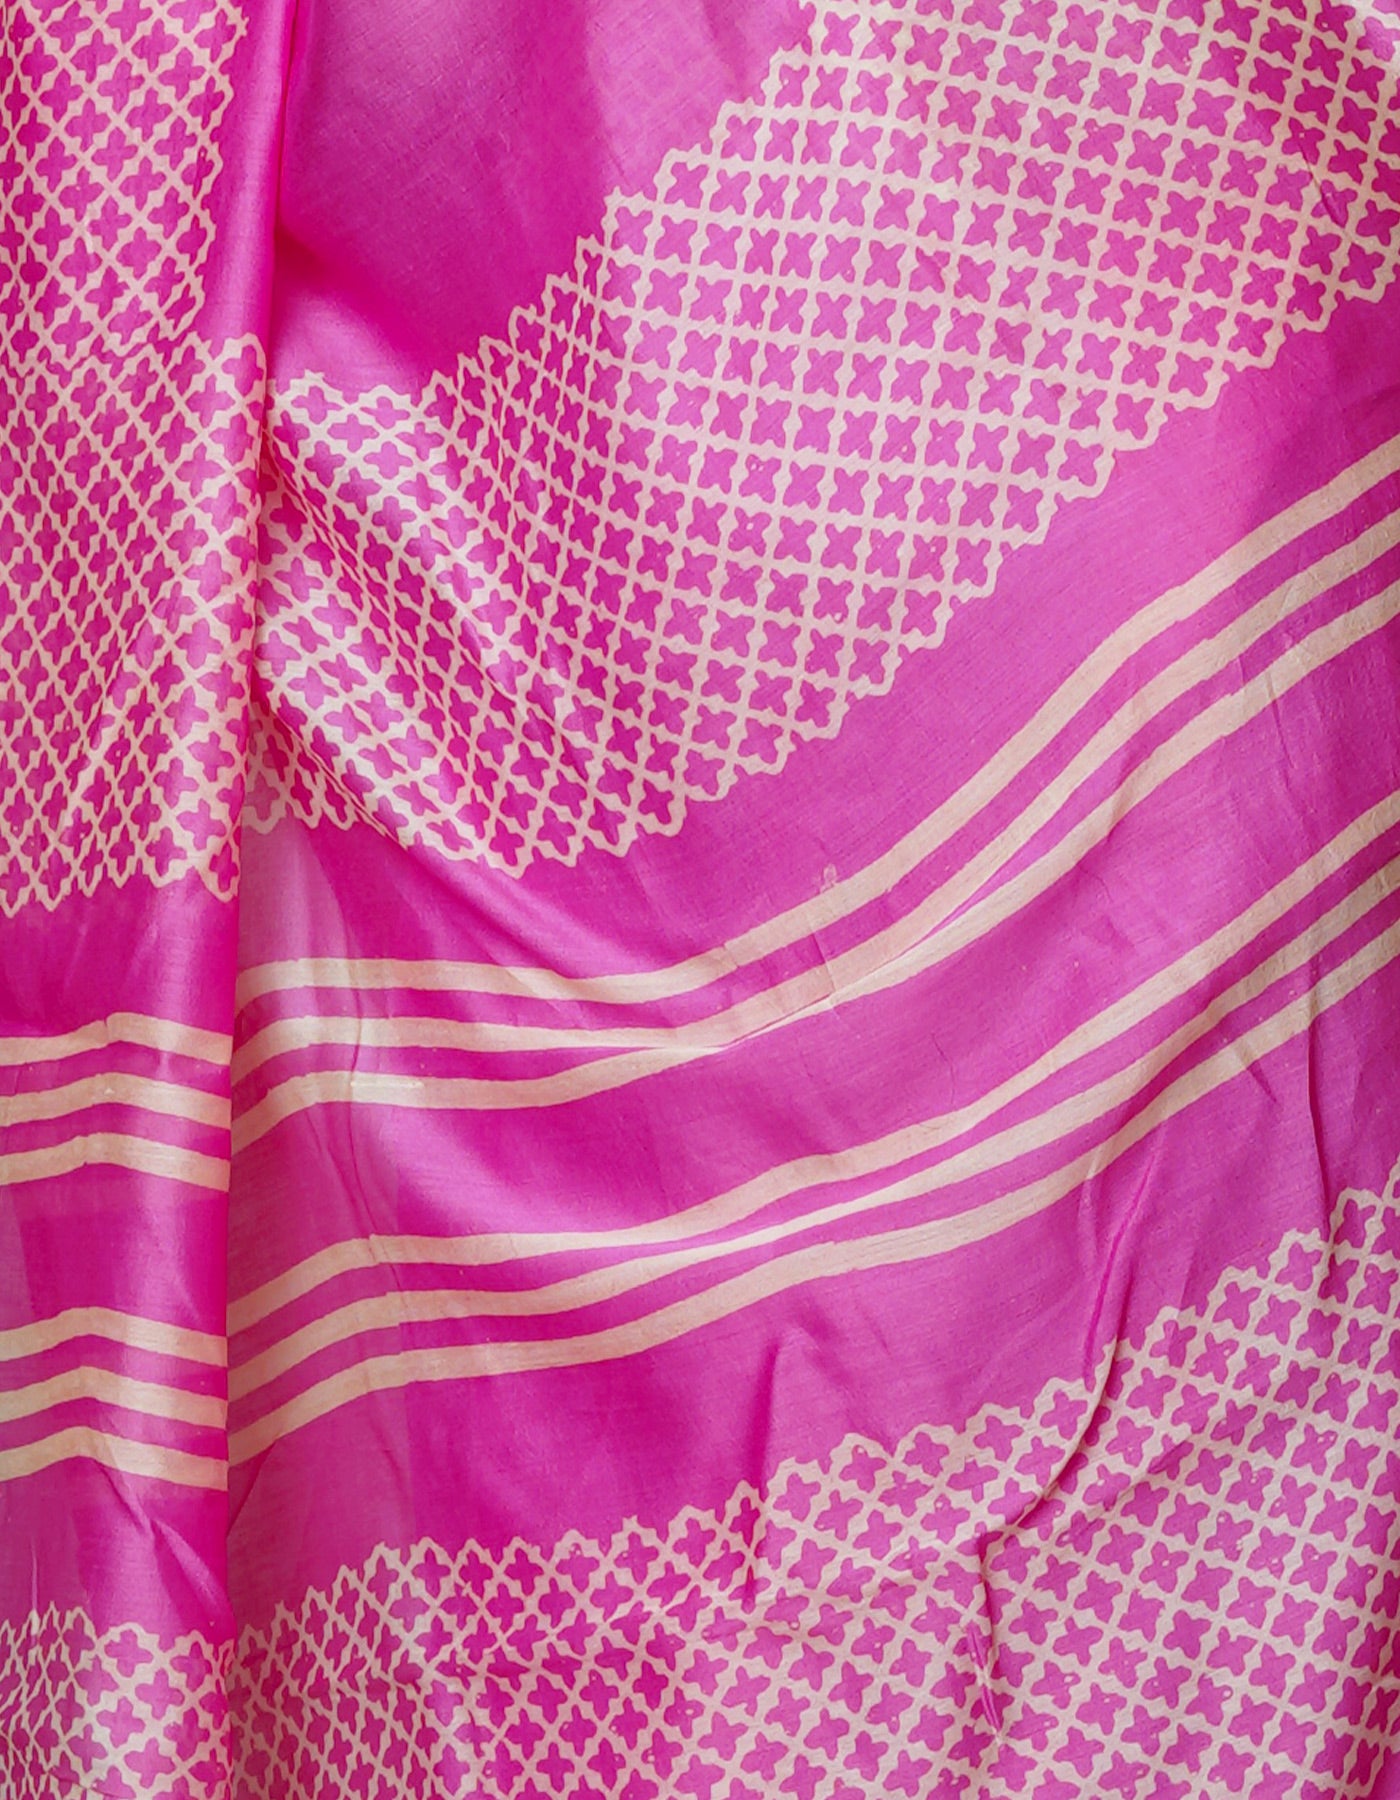 Pink Pure Block Printed Chanderi Sico Saree